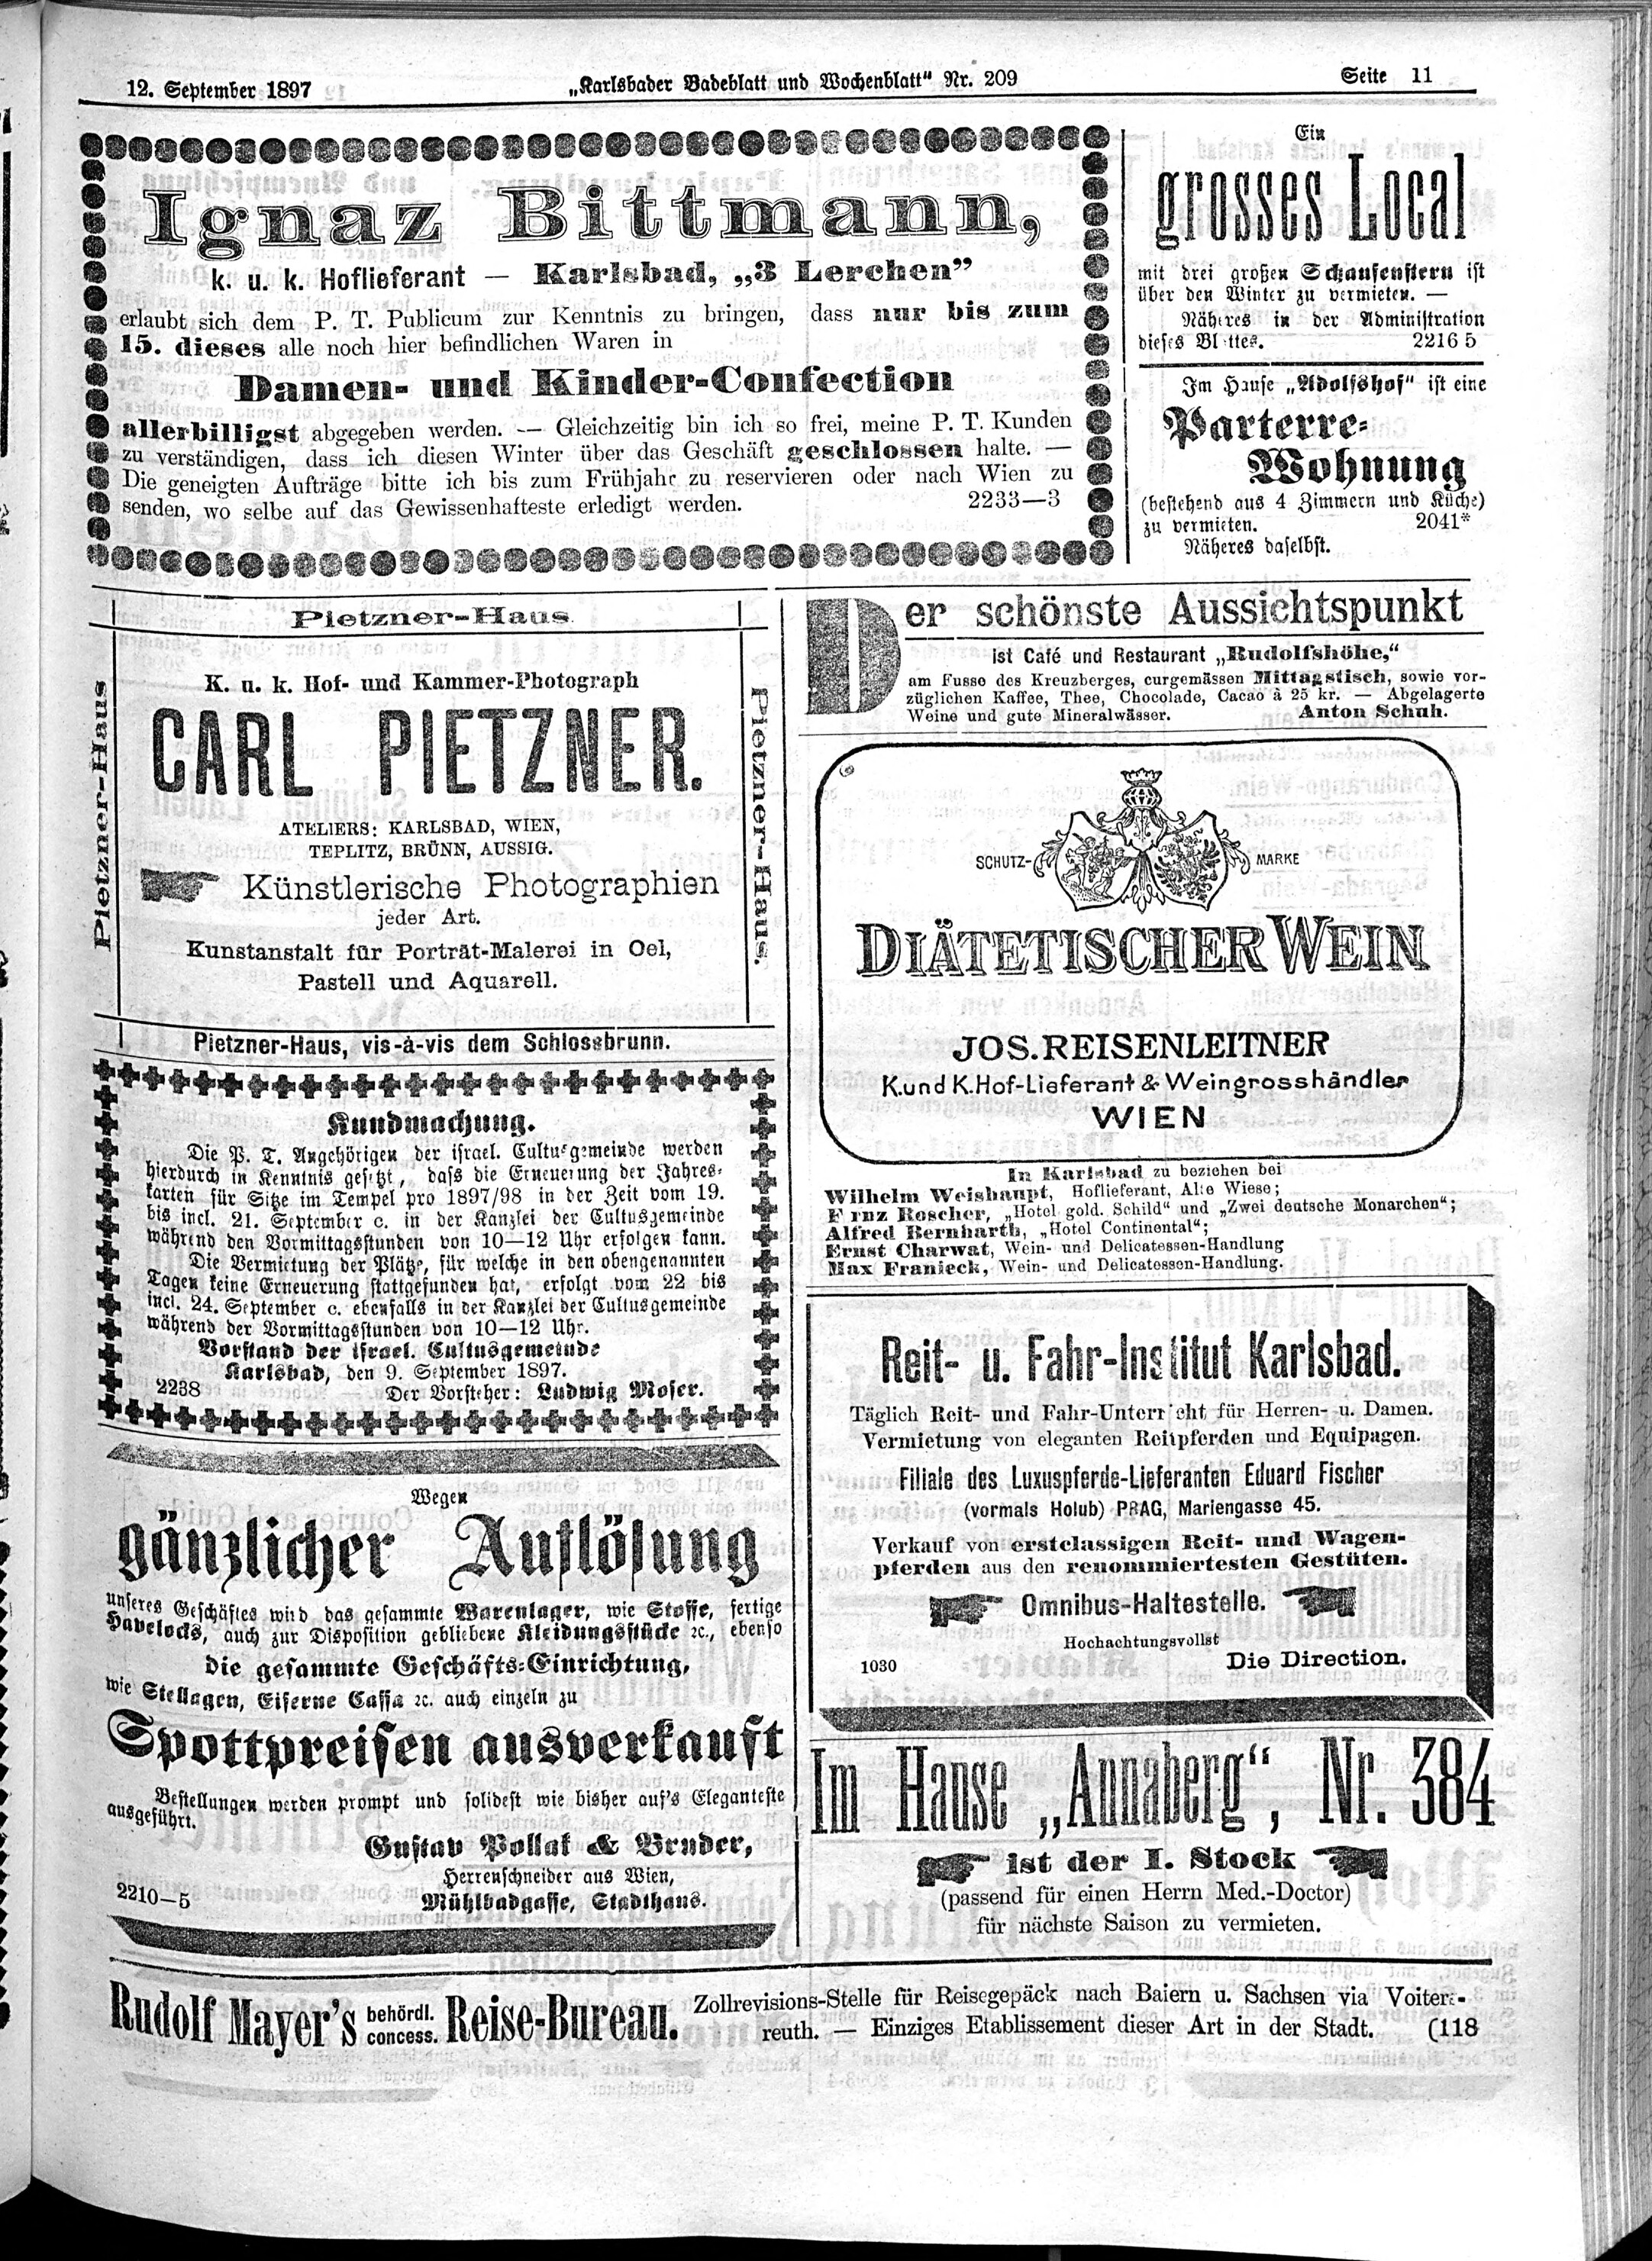 11. karlsbader-badeblatt-1897-09-12-n209_3565